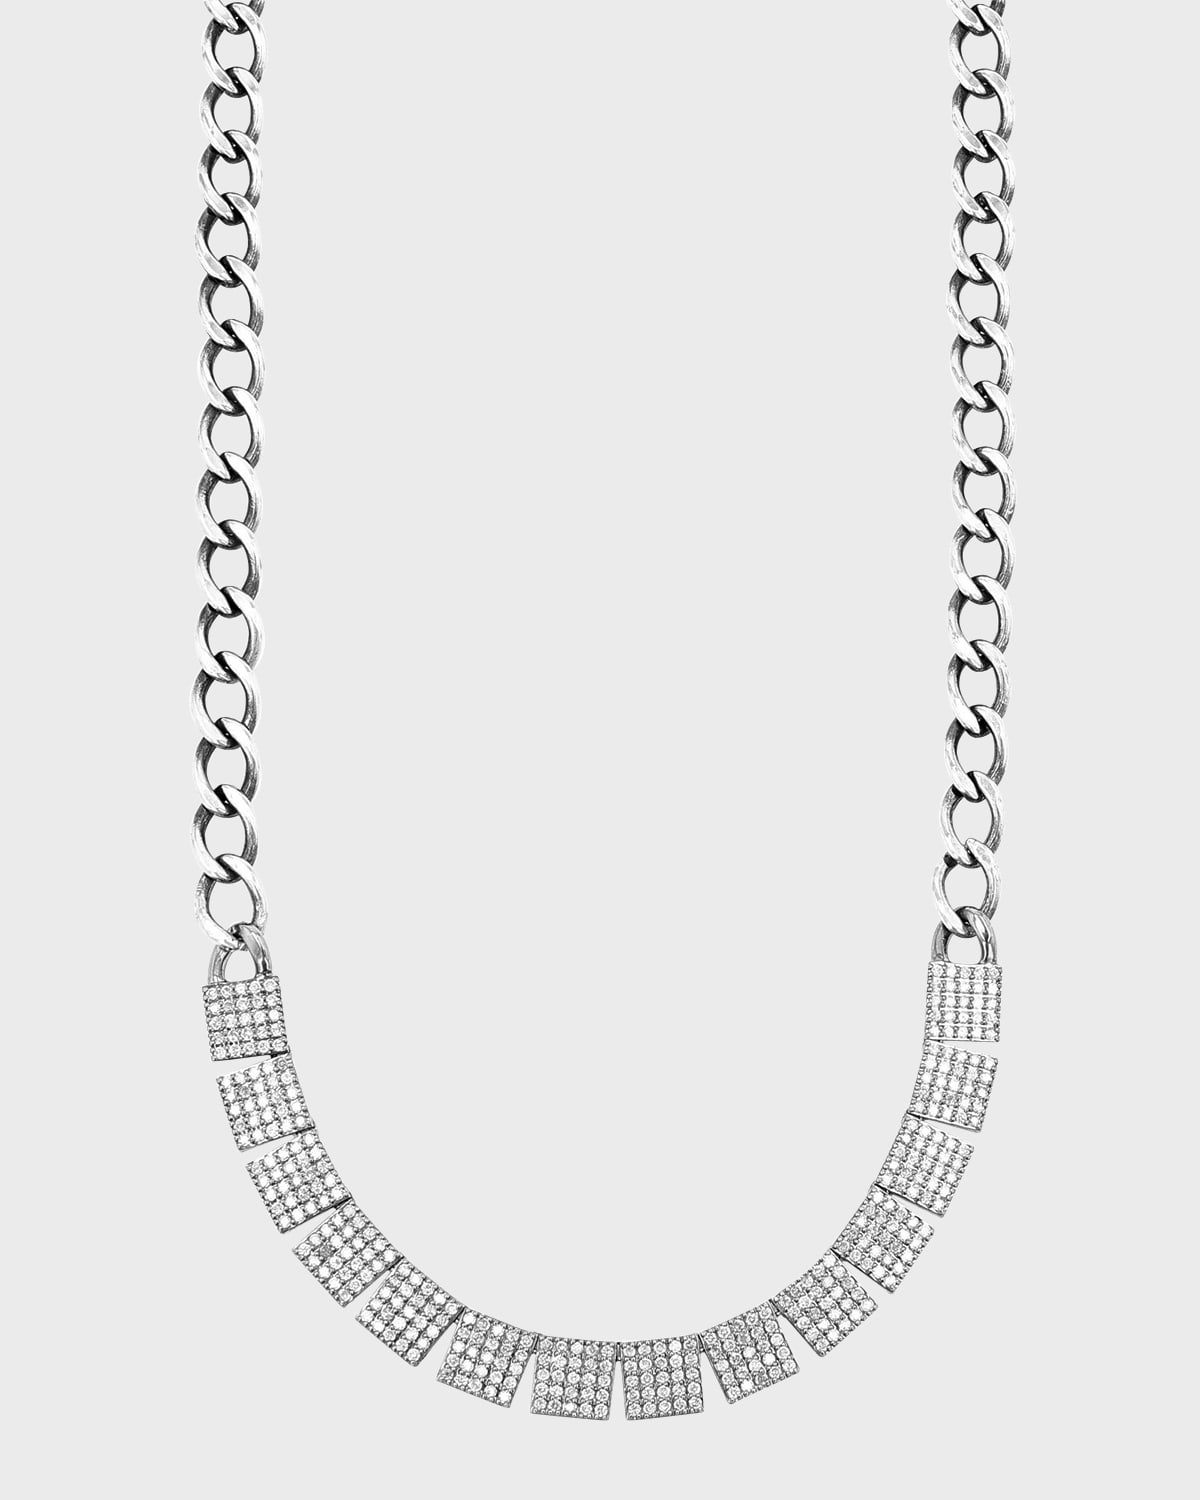 Pavé Diamond Chain Necklace, 18"L